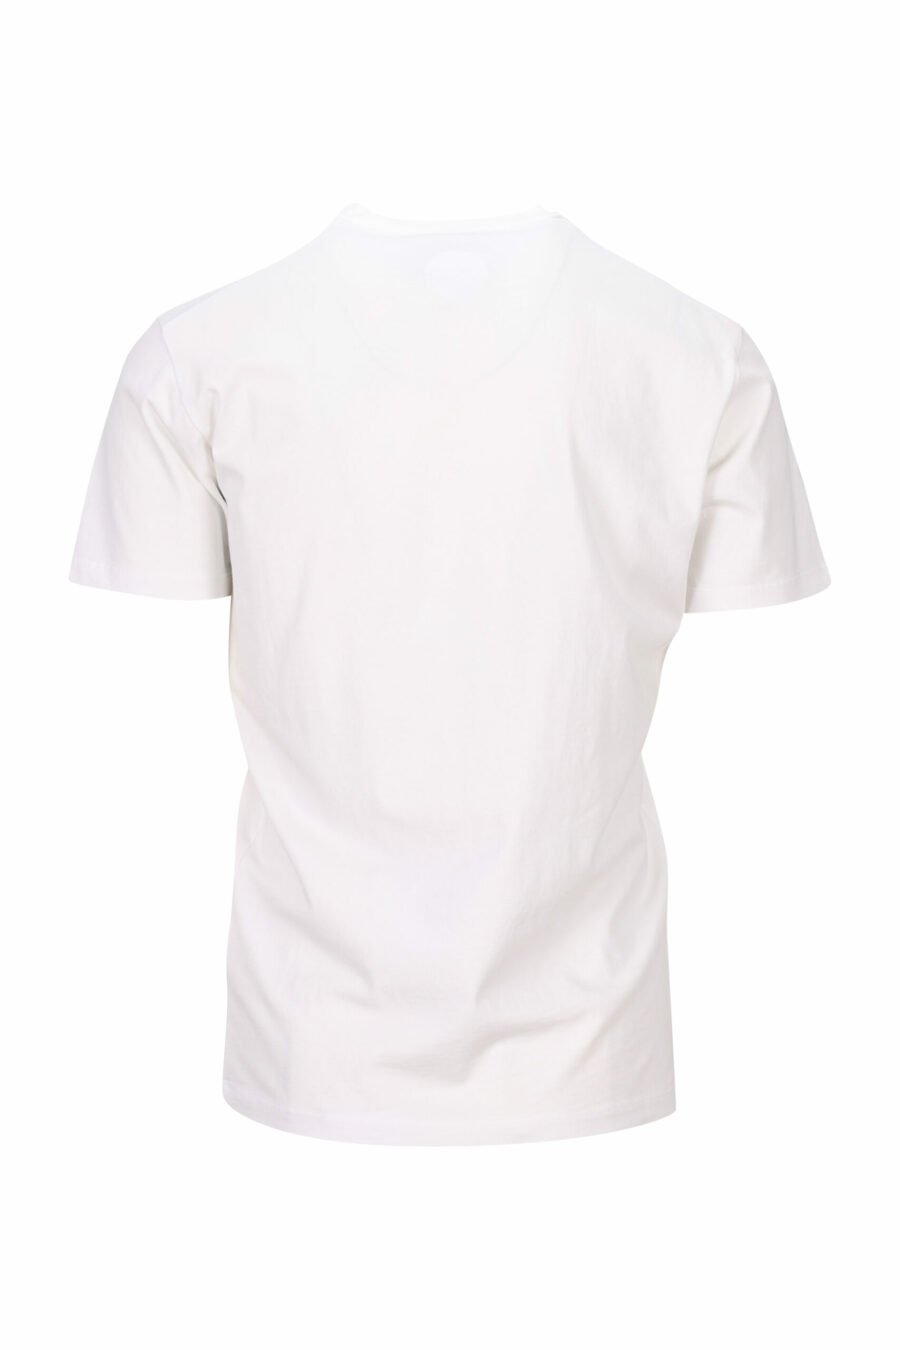 Camiseta blanca con maxilogo "collegue league" - 8054148504496 1 scaled